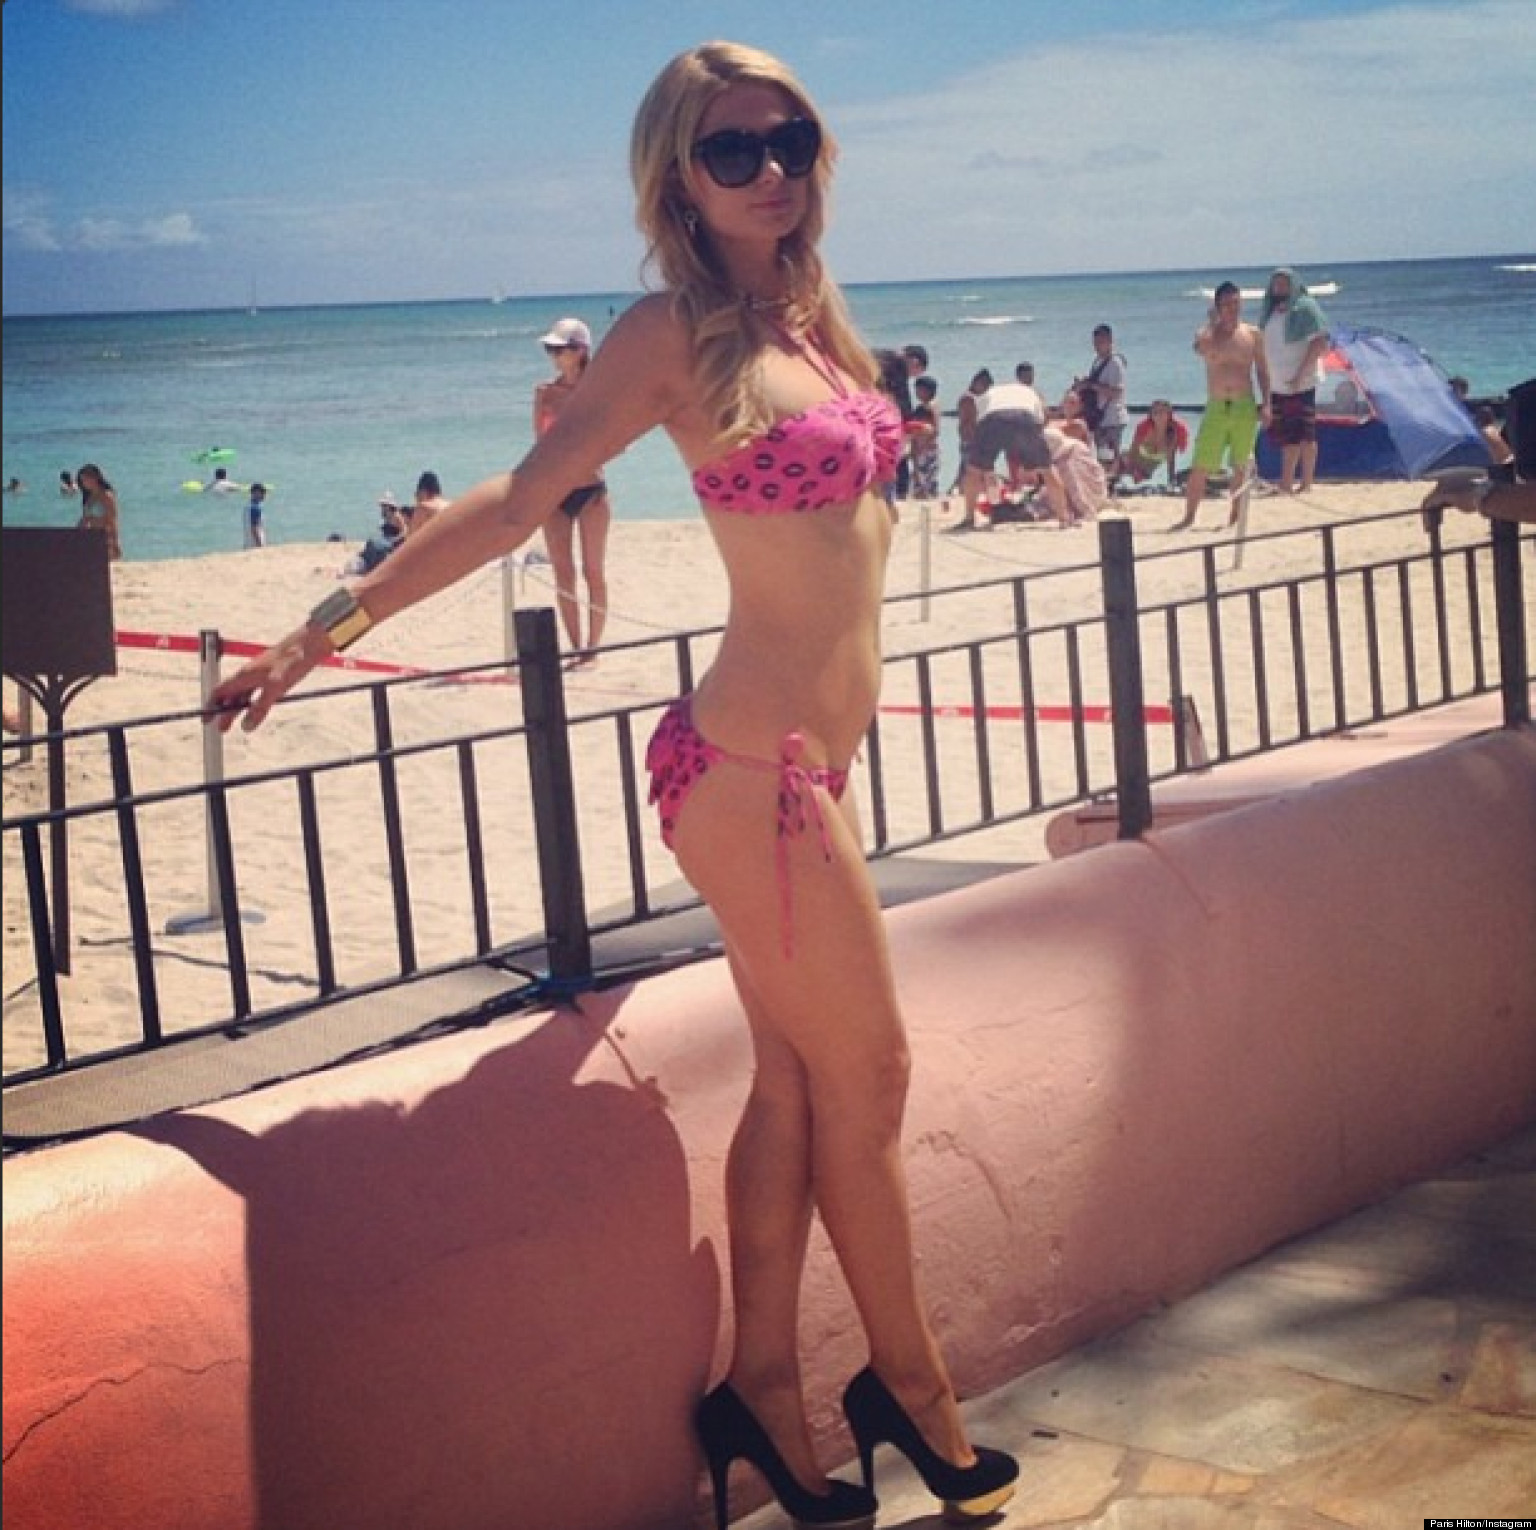 Paris Hilton's Bikini Body Graces Instagram (PHOTOS) | HuffPost1536 x 1530